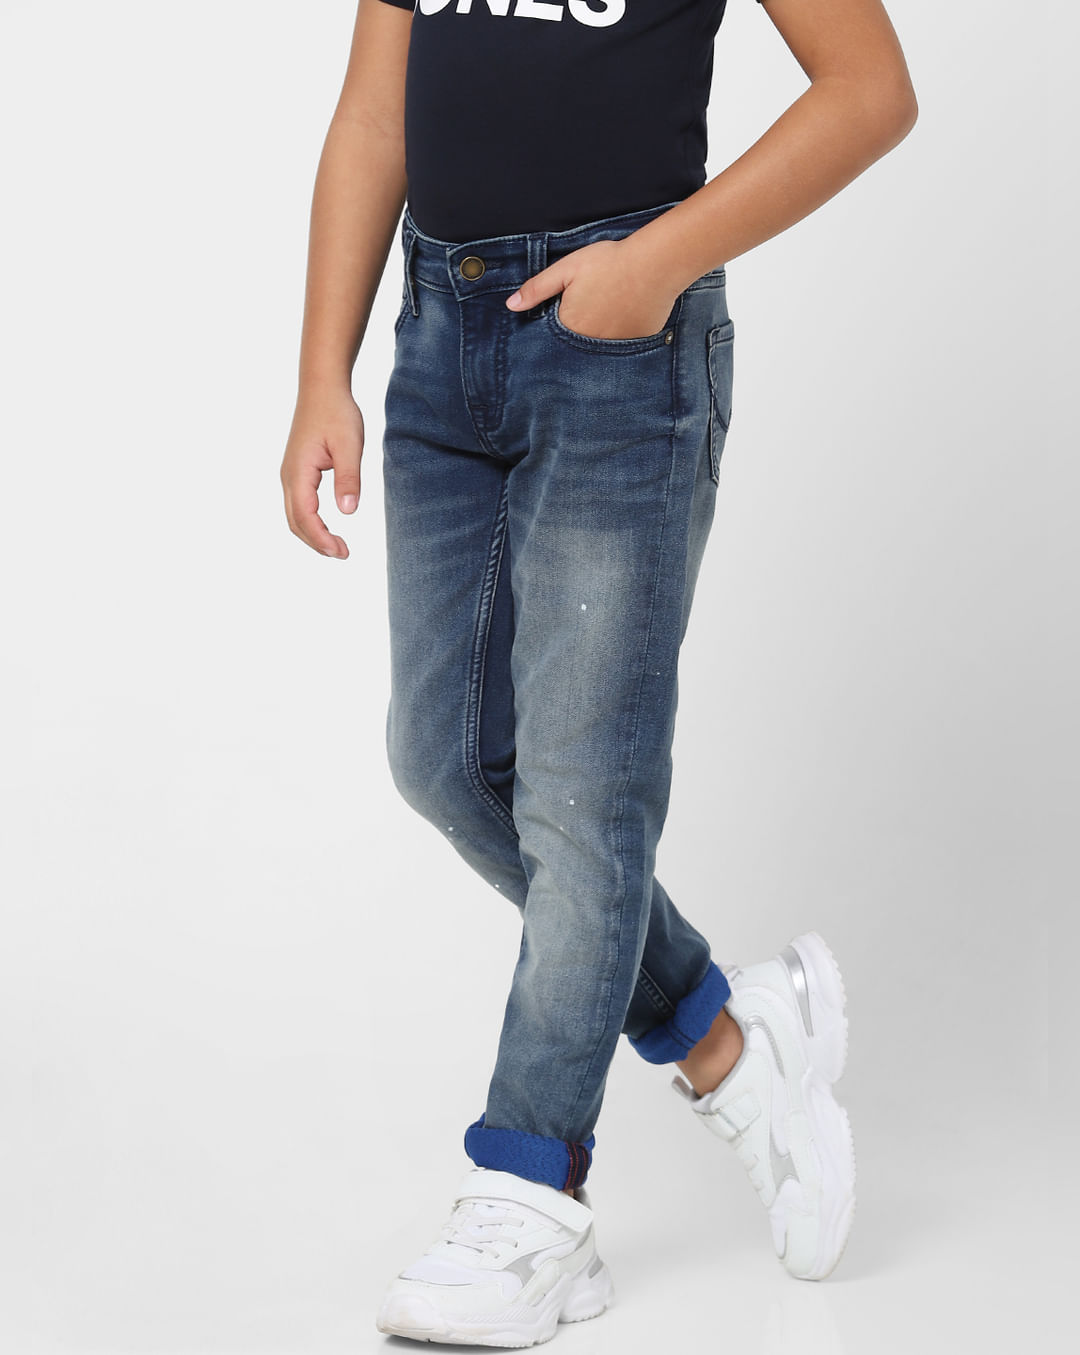 Buy Blue Mid Rise Glenn Slim Fit Jeans for Boys Online at Jack&Jones ...